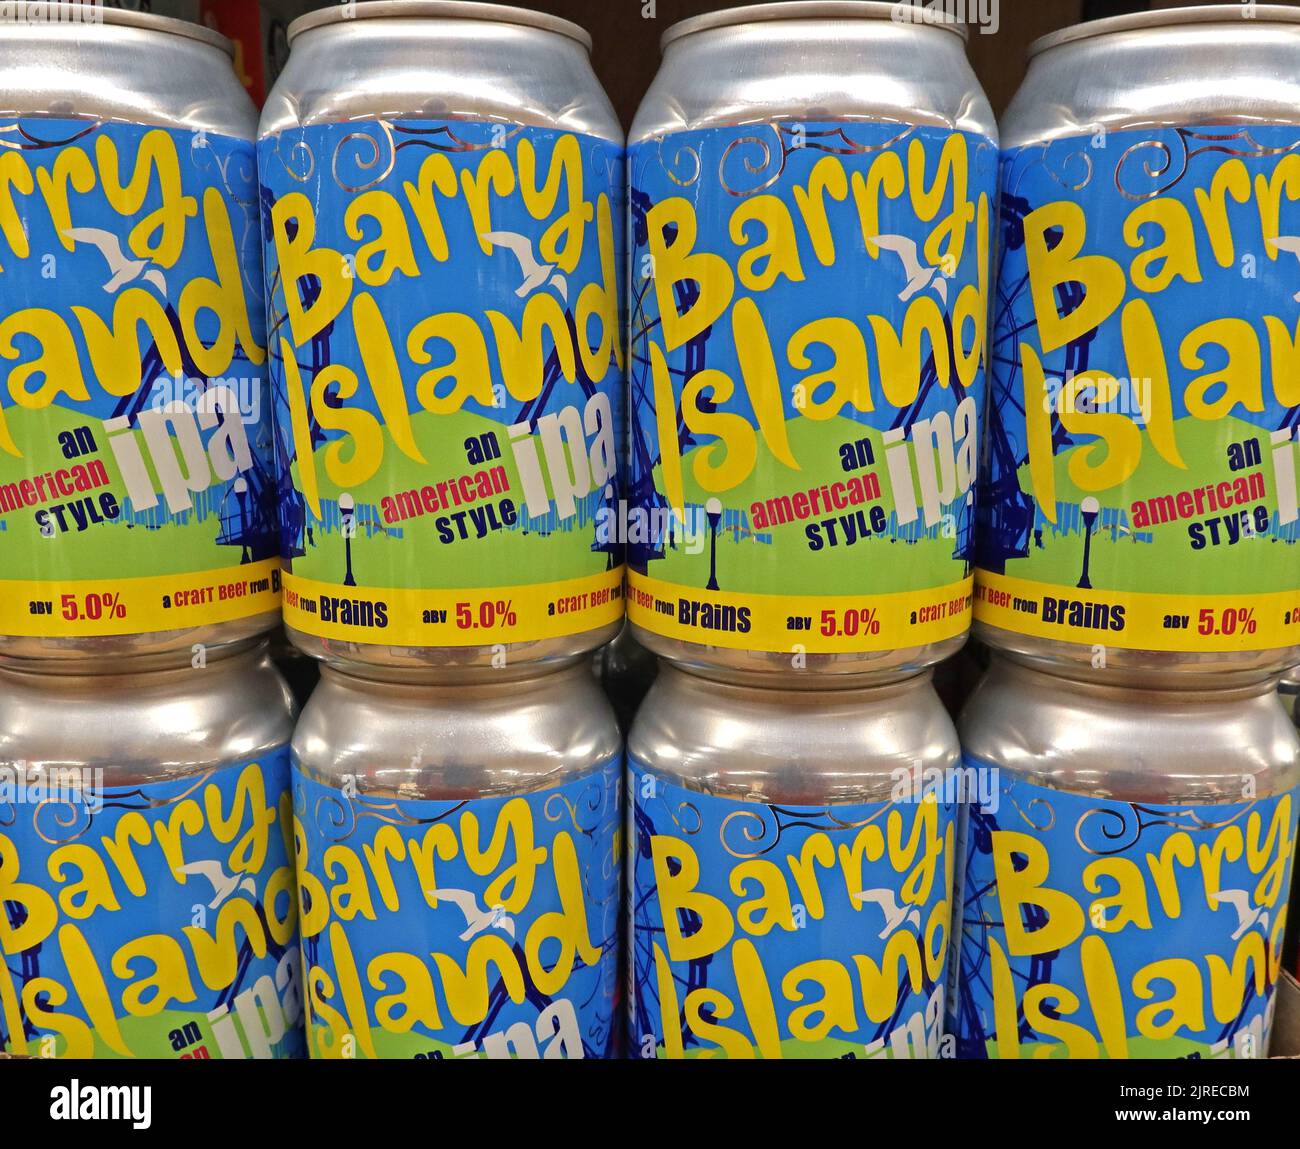 Boîtes de Barry Island, frais , Hoppy, Tidy, American style IPA, Bière artisanale de la brasserie Brains Dragon. 5 % Banque D'Images